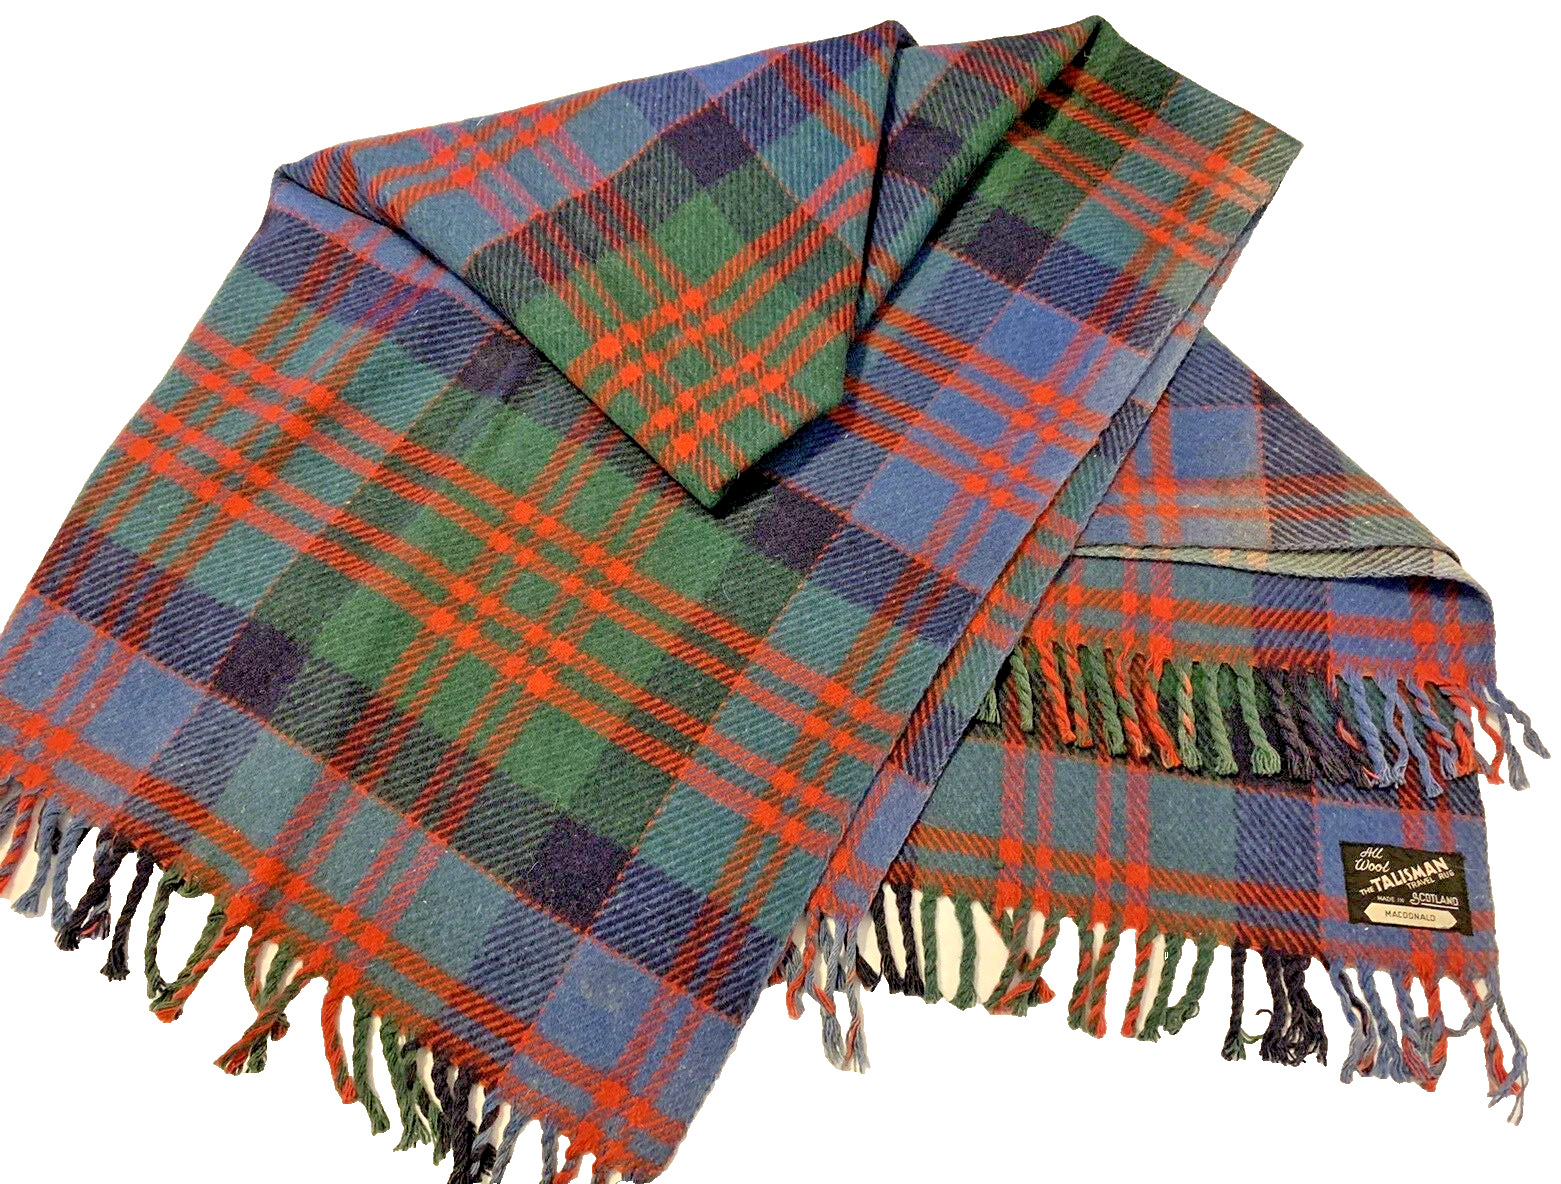 Talisman Scottish Wool Tartan Plaid Travel Throw Blanket - MACDONALD 64x56